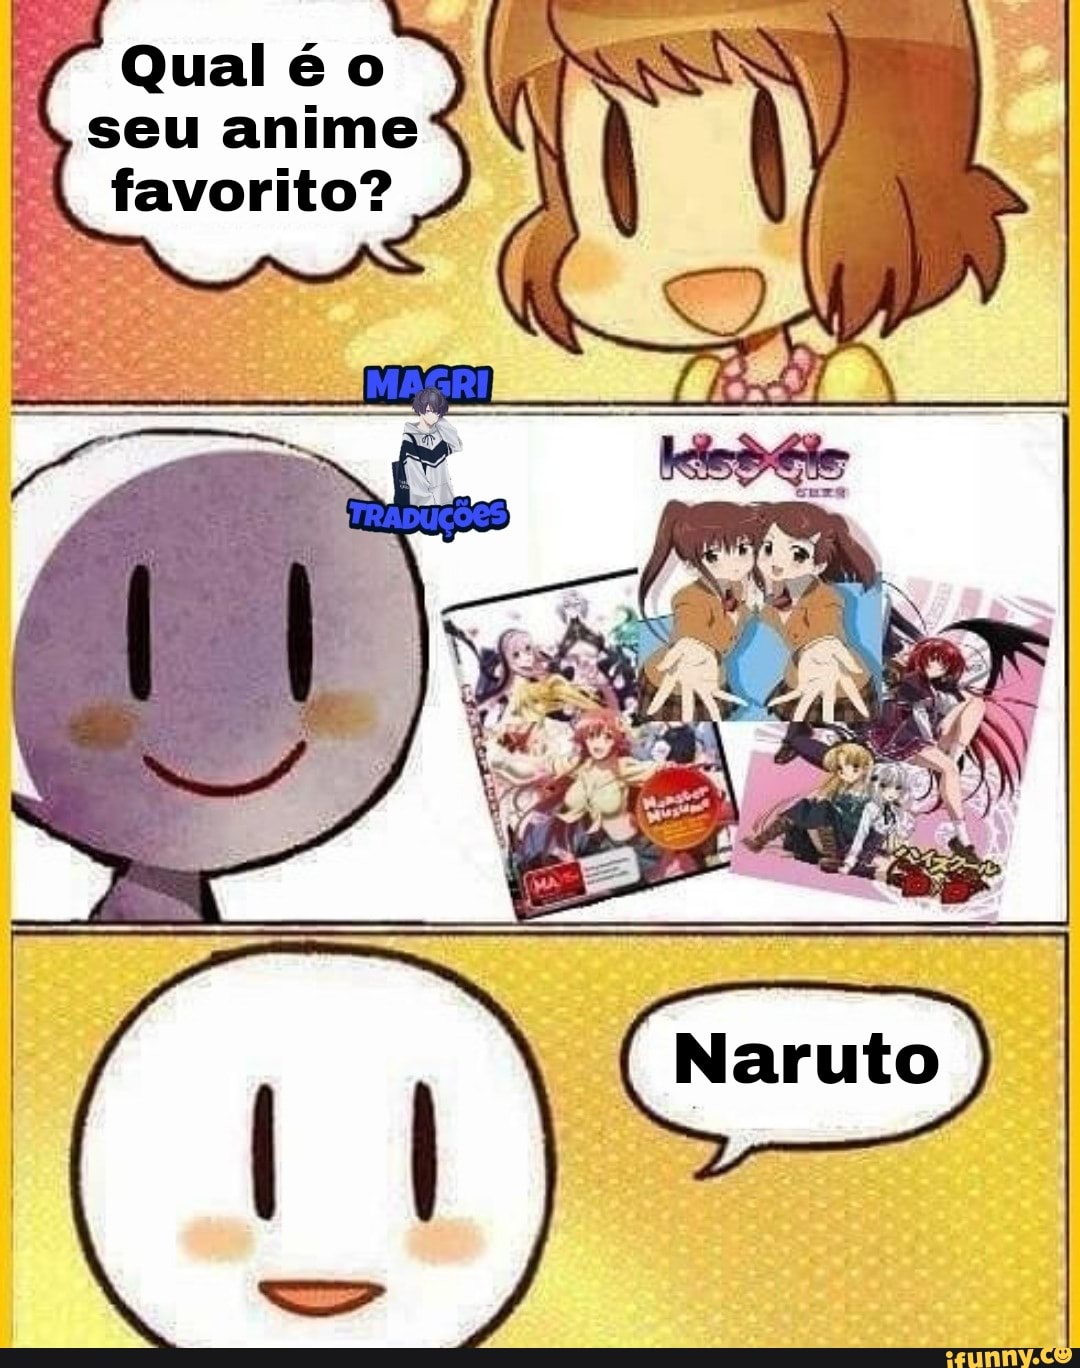 Qual meu anime favorito?